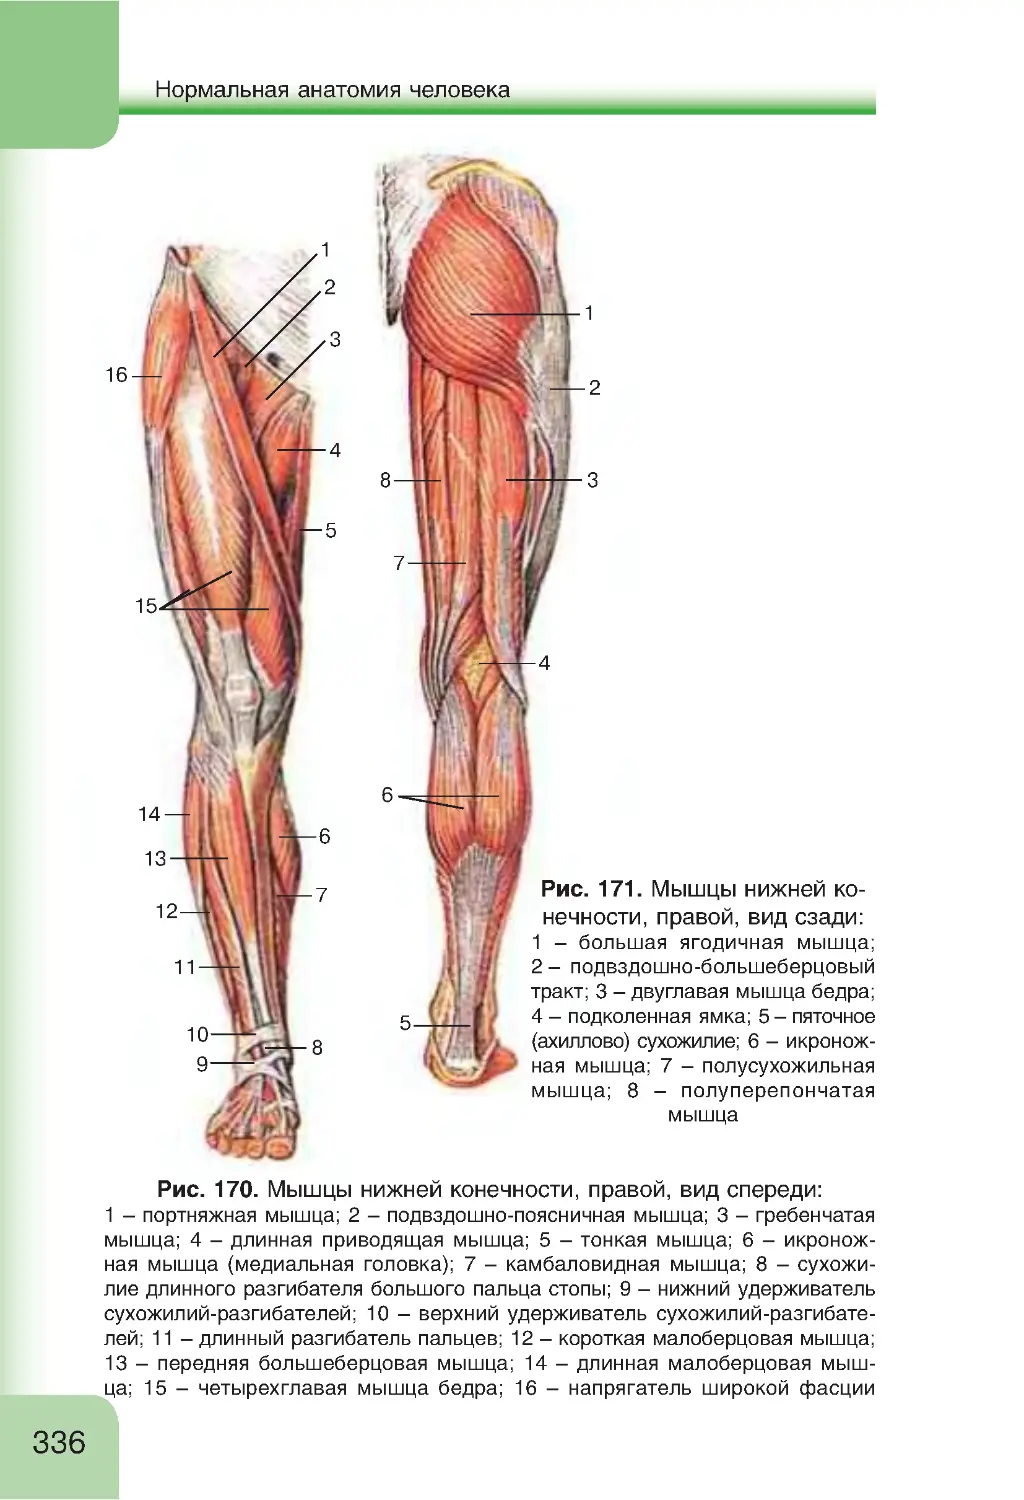 Мышцы нижних конечностей стопы. Строение мышц нижних конечностей.